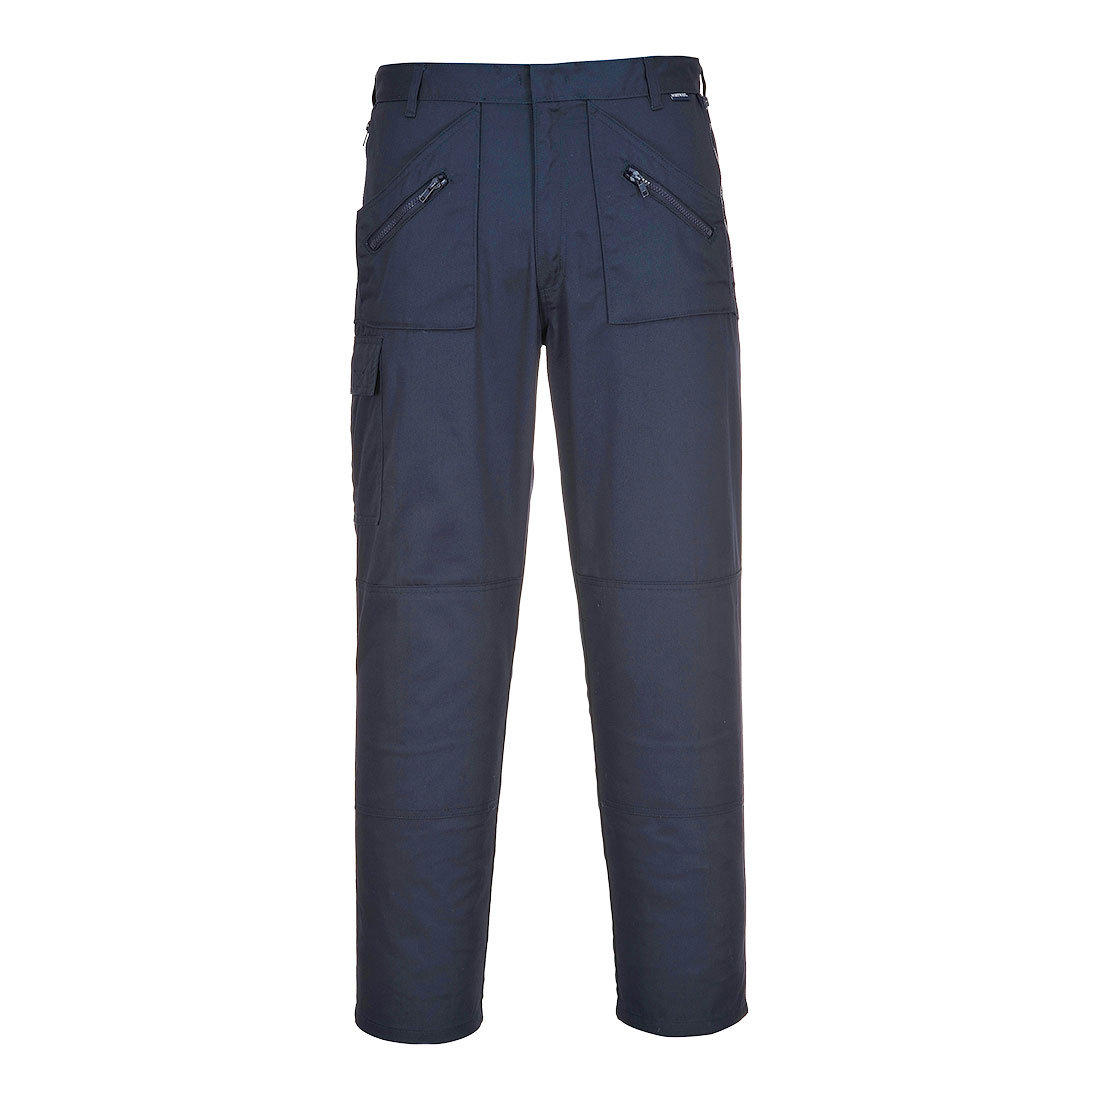 Portwest Kieszenie na kolana portwest Navy s887 spodnie robocze z długość nogawki 31 (standard długość) Kolor niebieski morski, niebieski S887NAR48